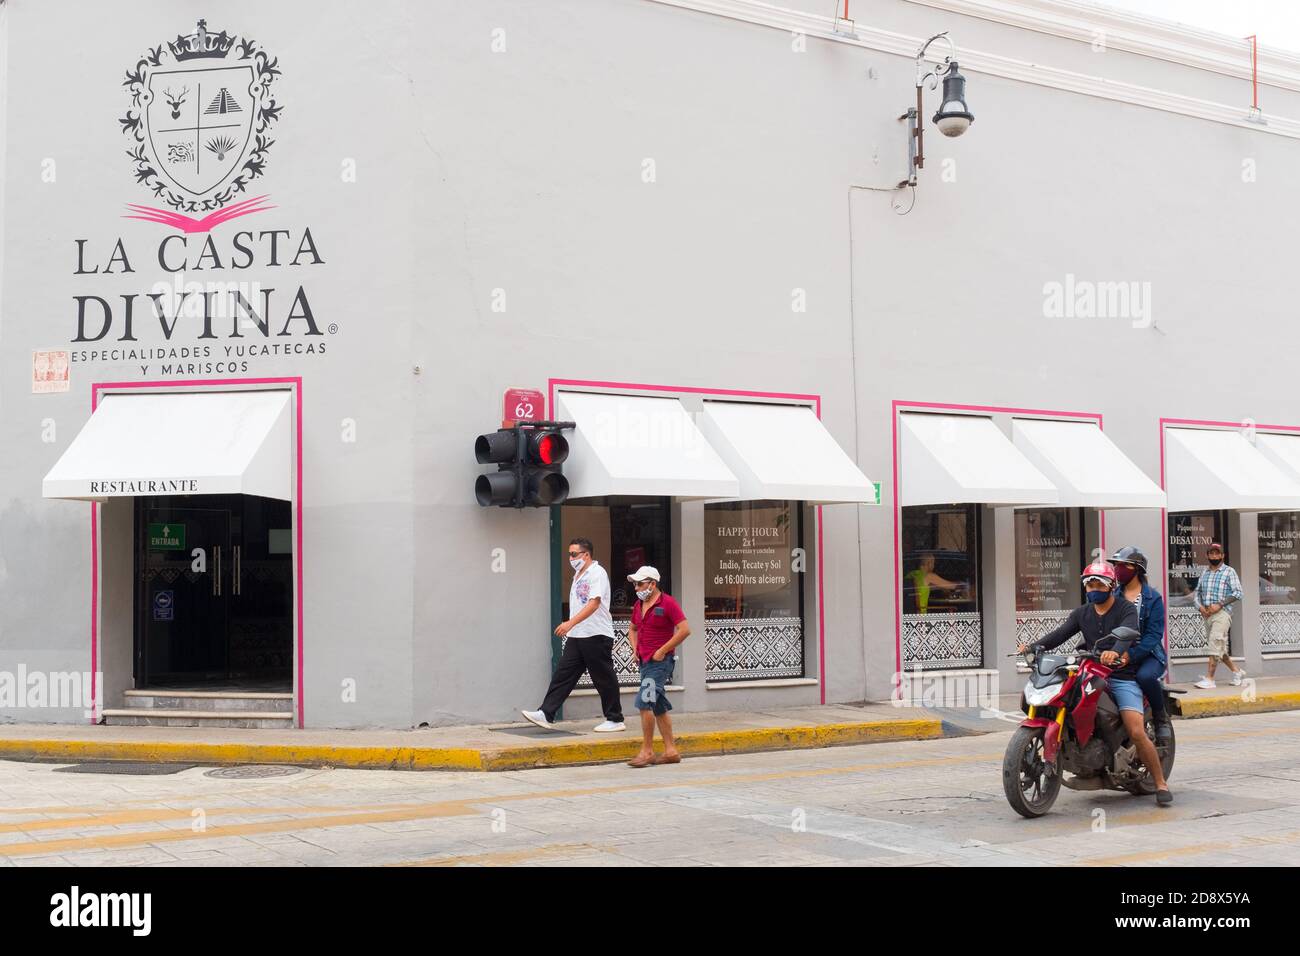 Persone che camminano in un centro di Merida quasi vuoto durante il Covid19 Pandemic, novembre 2020 - molti negozi sono stati chiusi e molte imprese sono andati fuori di affari a causa delle restrizioni Coronavirus. Merida, Yucatan, Messico Foto Stock